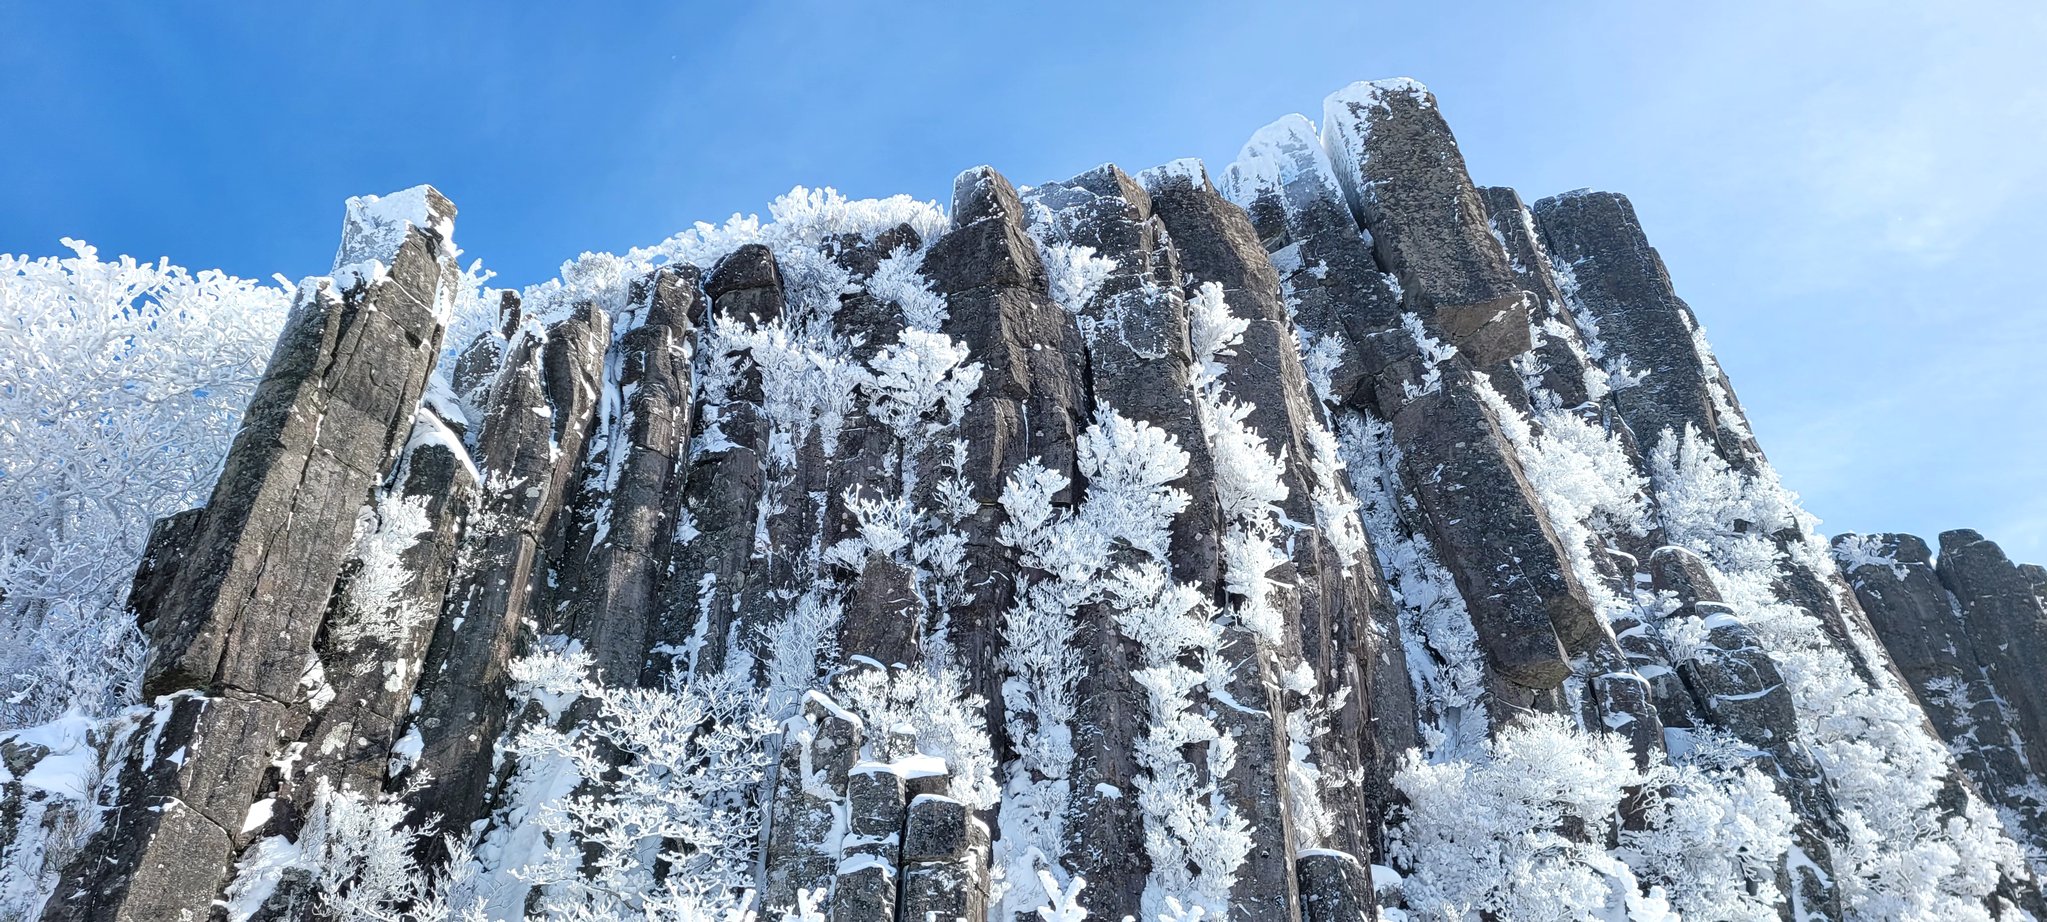 25일 광주 무등산국립공원 정상부(서석대)에 지난 사흘간 내린 눈이 쌓여 아름다운 설경을 연출하고 있다. 사진 무등산국립공원관리사무소 제공